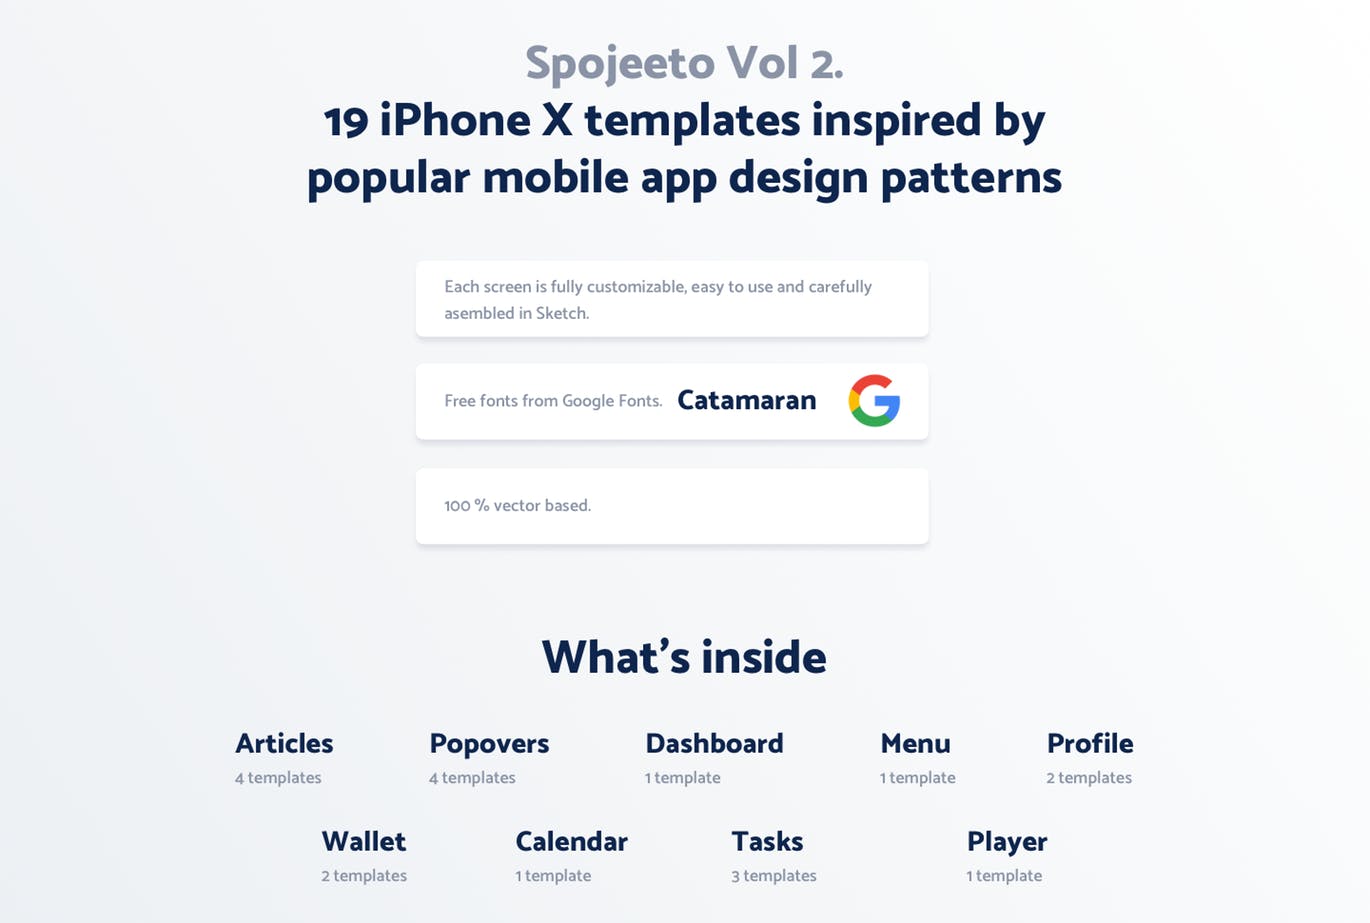 极简主义设计风格APP应用UI设计素材库精选套件v2 Vol. 2 – Spojeeto Mobile App UI Kit插图(1)